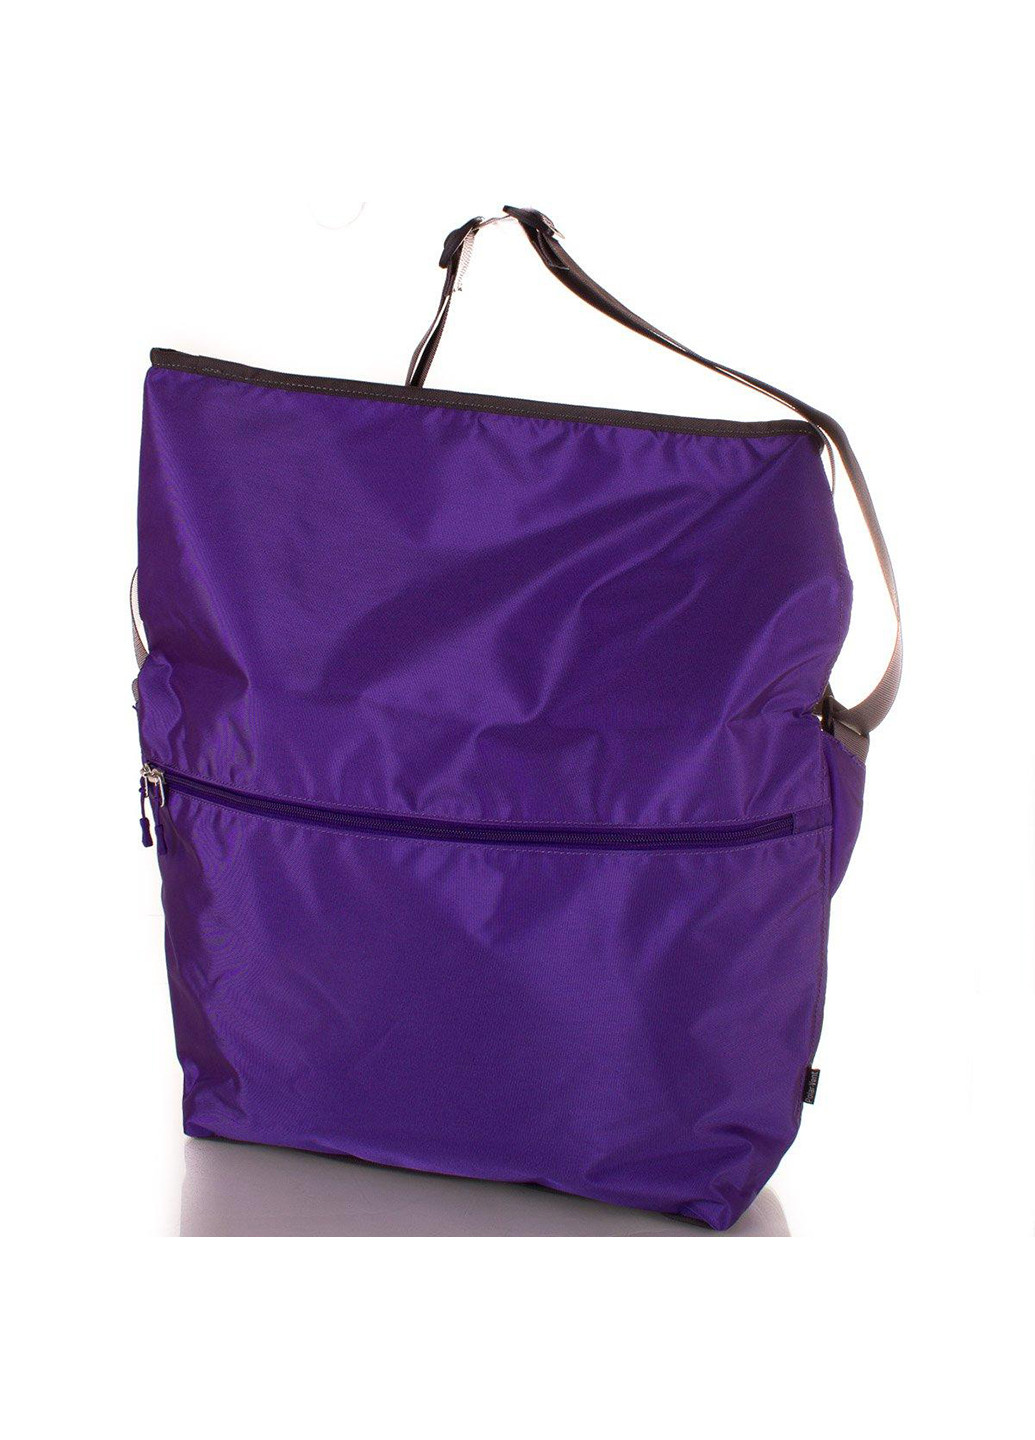 Женская спортивная сумка через плечо 32х35х10 см Onepolar (253027593)